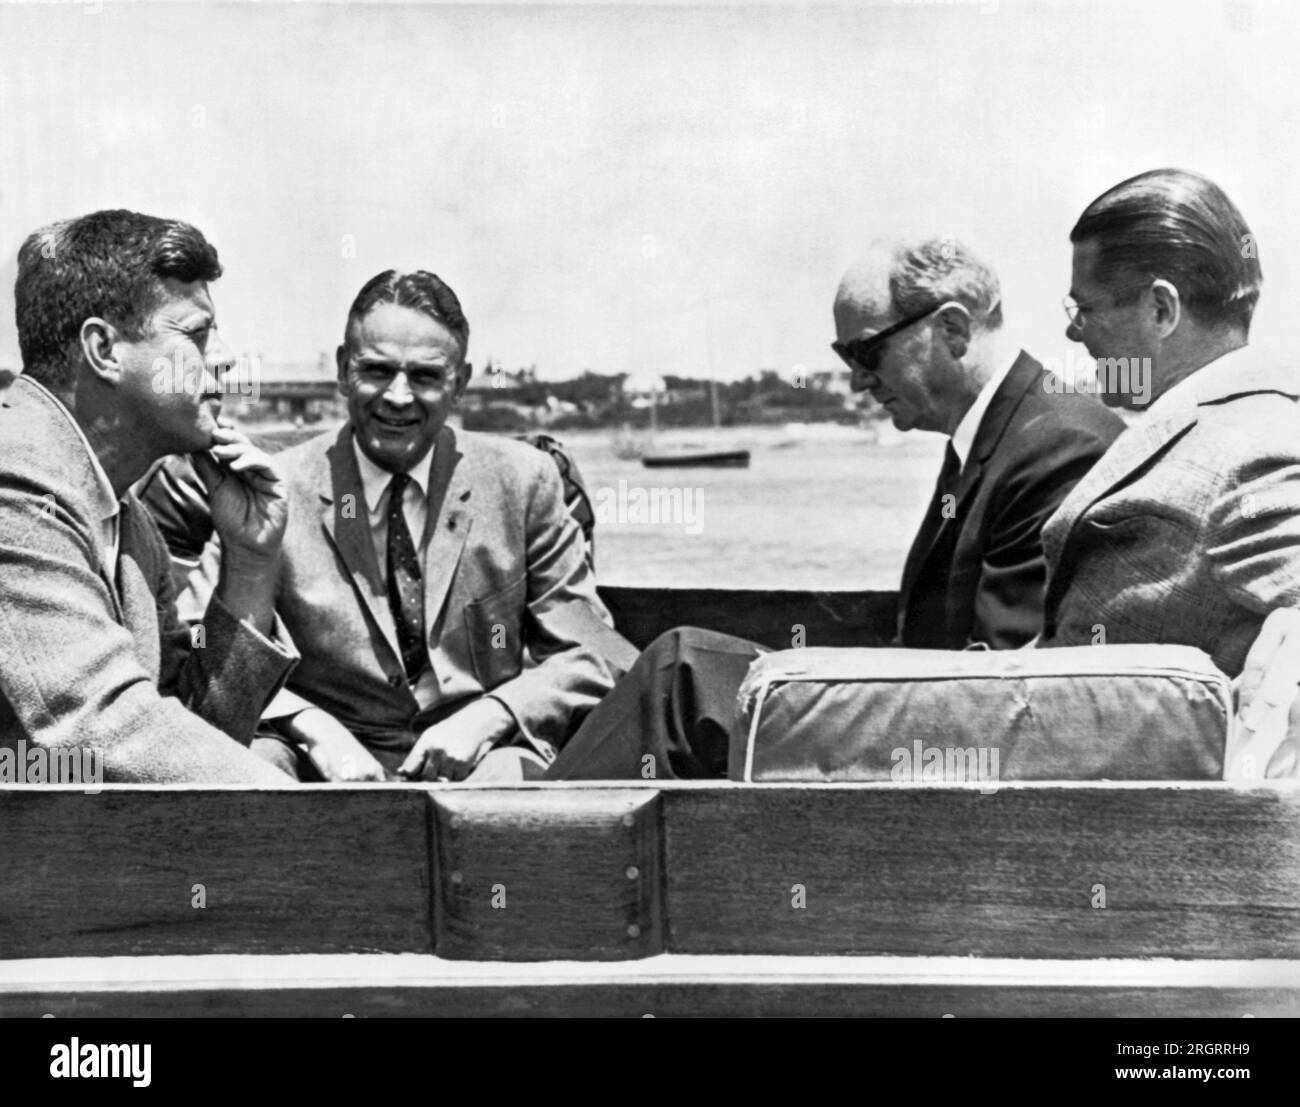 Hyannis Port, Massachusetts: 8. Juli 1961 Präsident Kennedy und seine Berater an Bord der Yacht Marlin diskutieren das Berliner Problem. L-R sind der Präsident, General Maxwell Taylor, Außenminister Dean Rusk und Verteidigungsminister Robert McNamara. Stockfoto